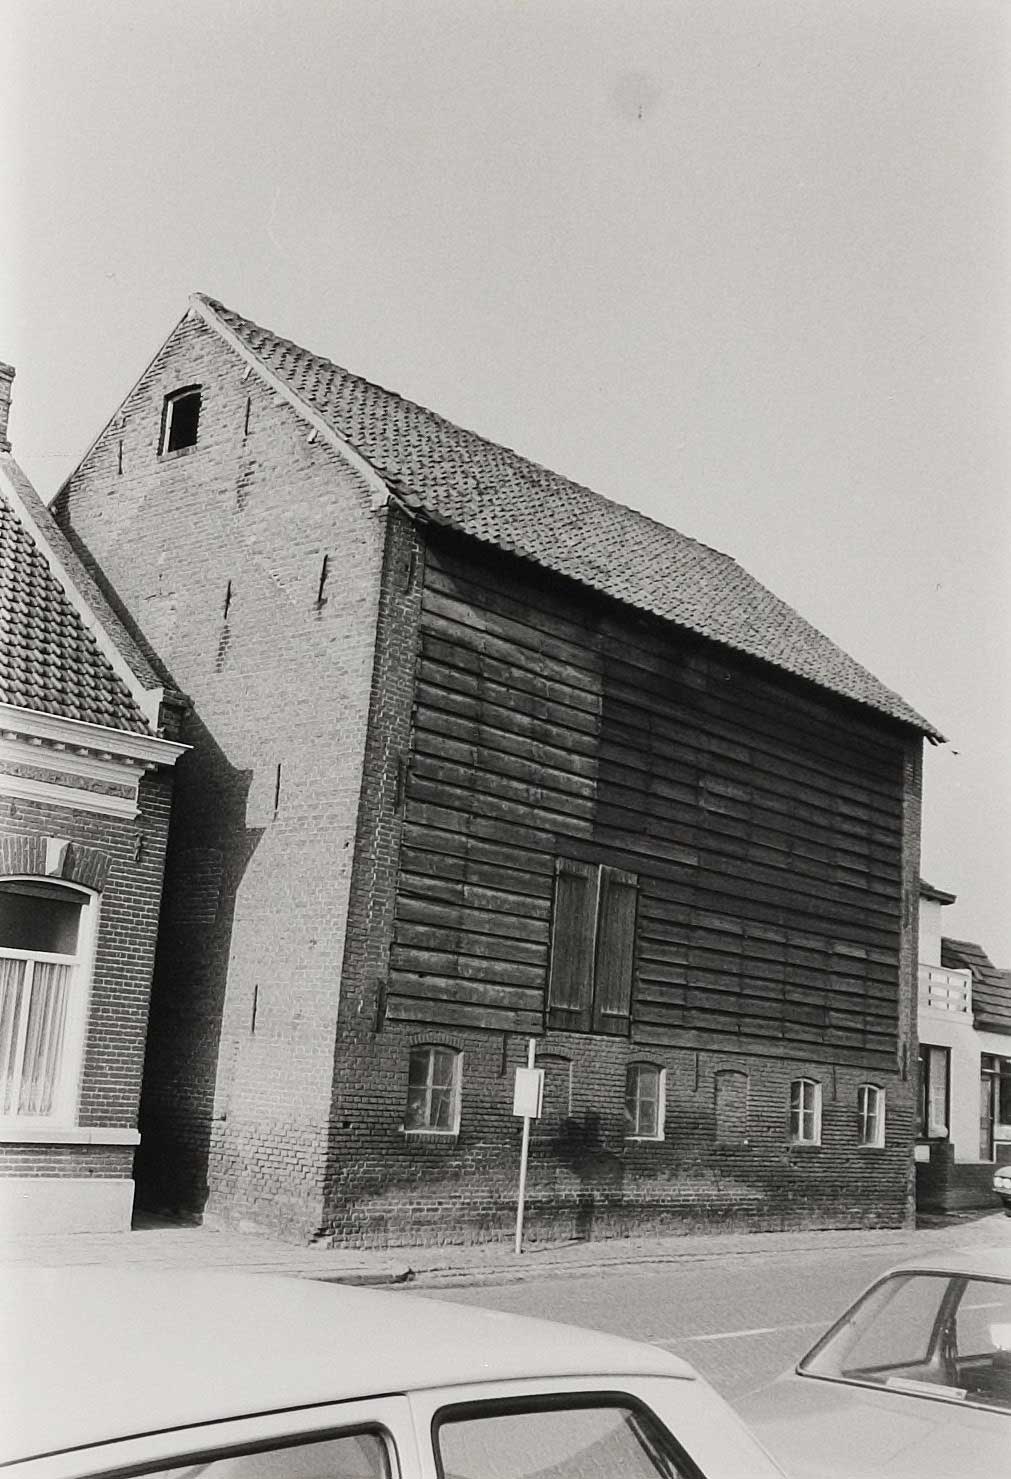  Leerlooierij Riel, gebouwd tussen 1850 en 1900, foto uit 1981